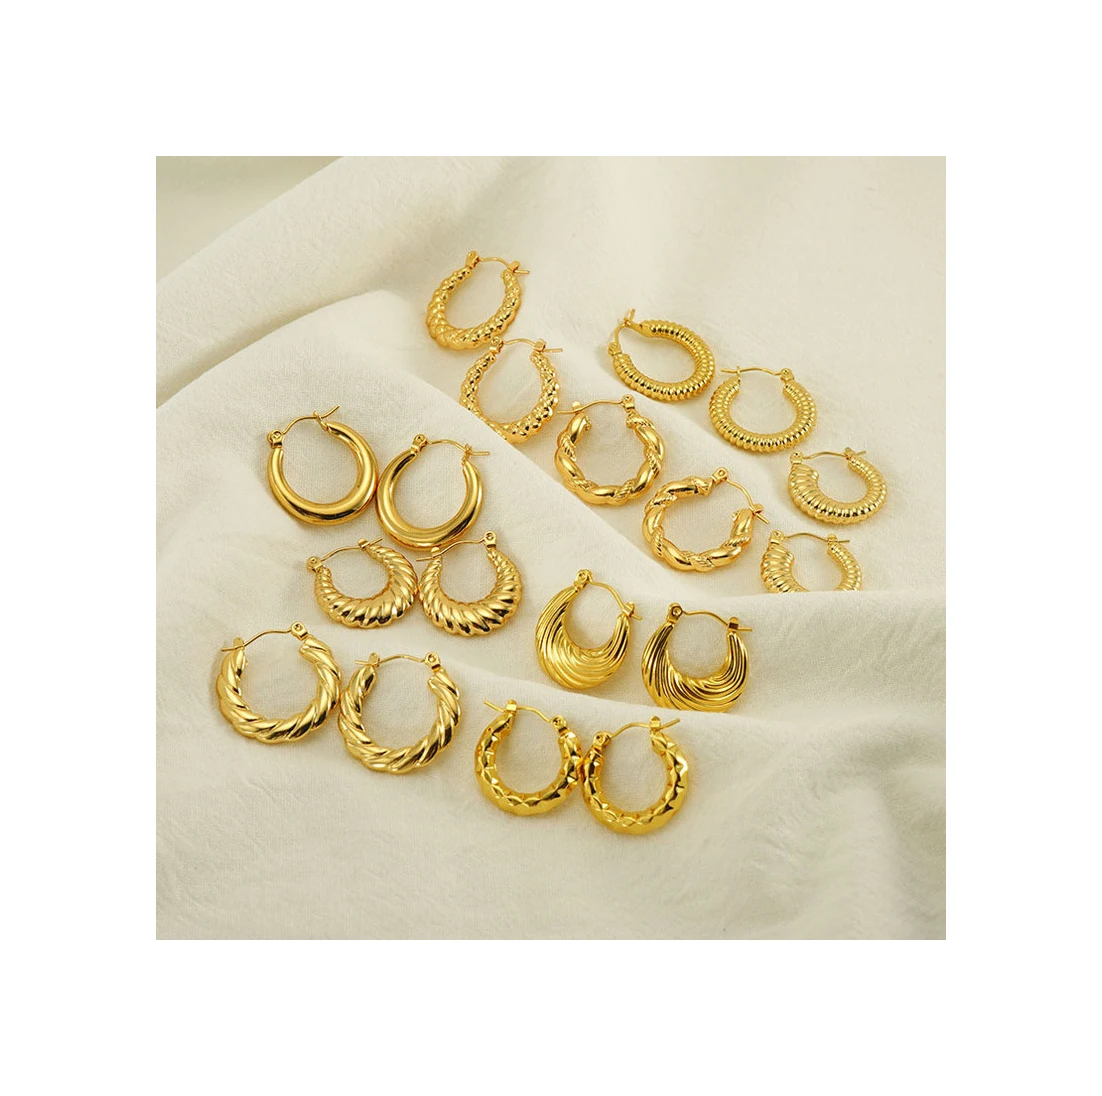 

ERESI TOP Selling Fashion Earrings Hoop Filled Gold Earrings 18k Gold Plated Hypoallergenic Earrings Jewelry for Women